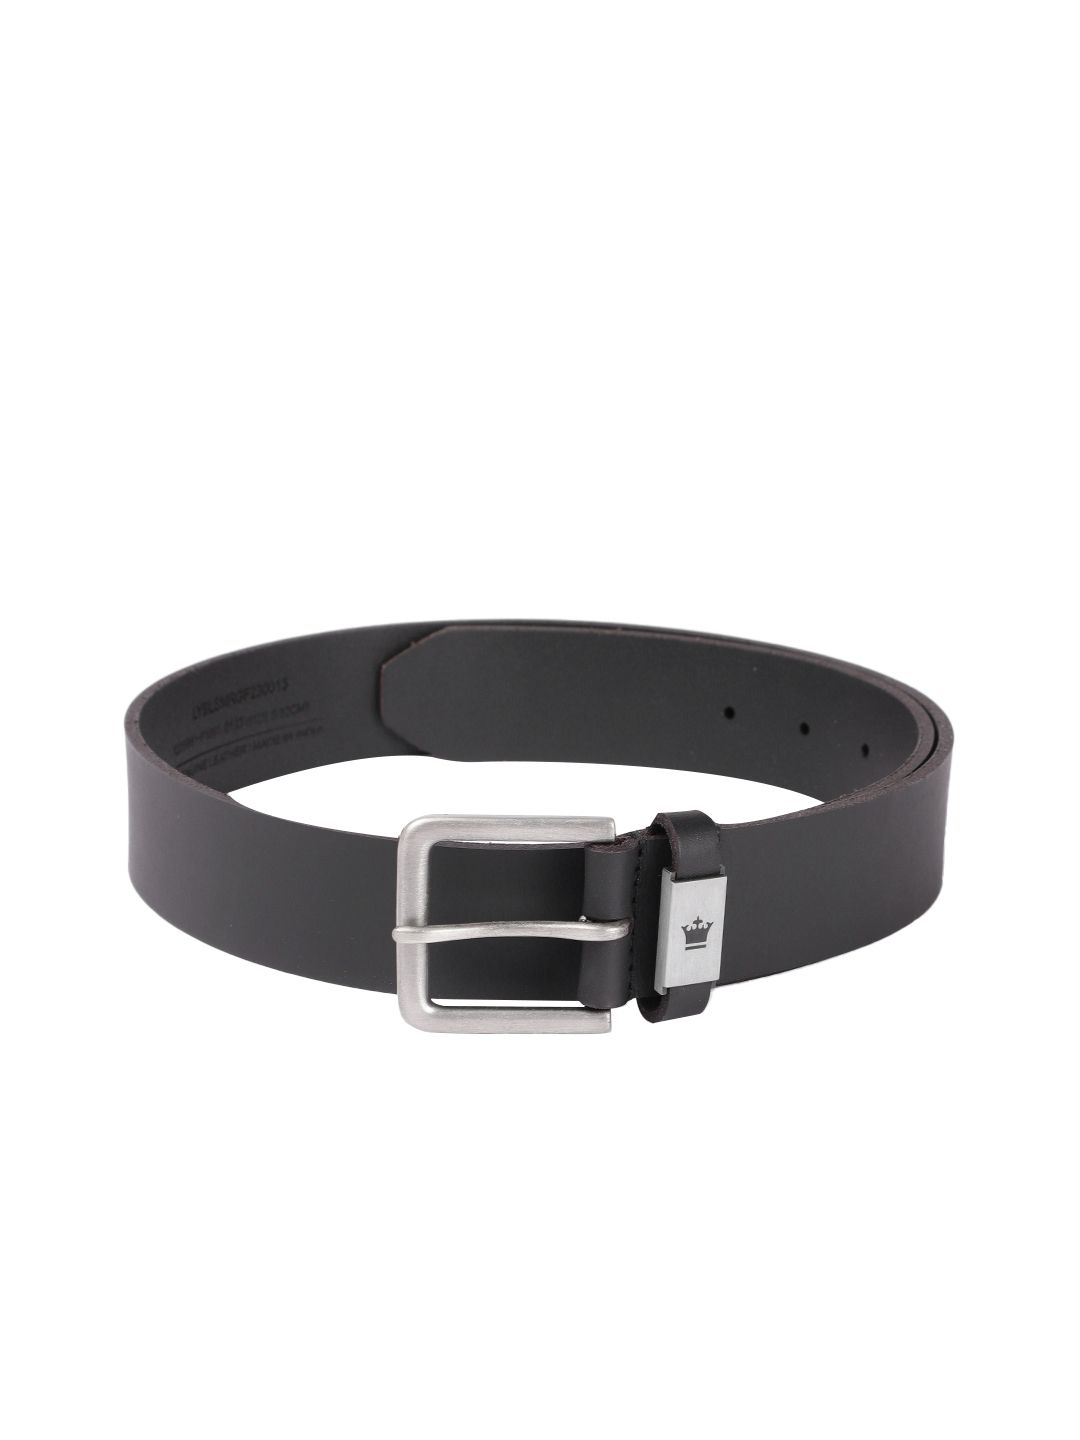 Louis Vuitton Leather Black Belts for Men for sale